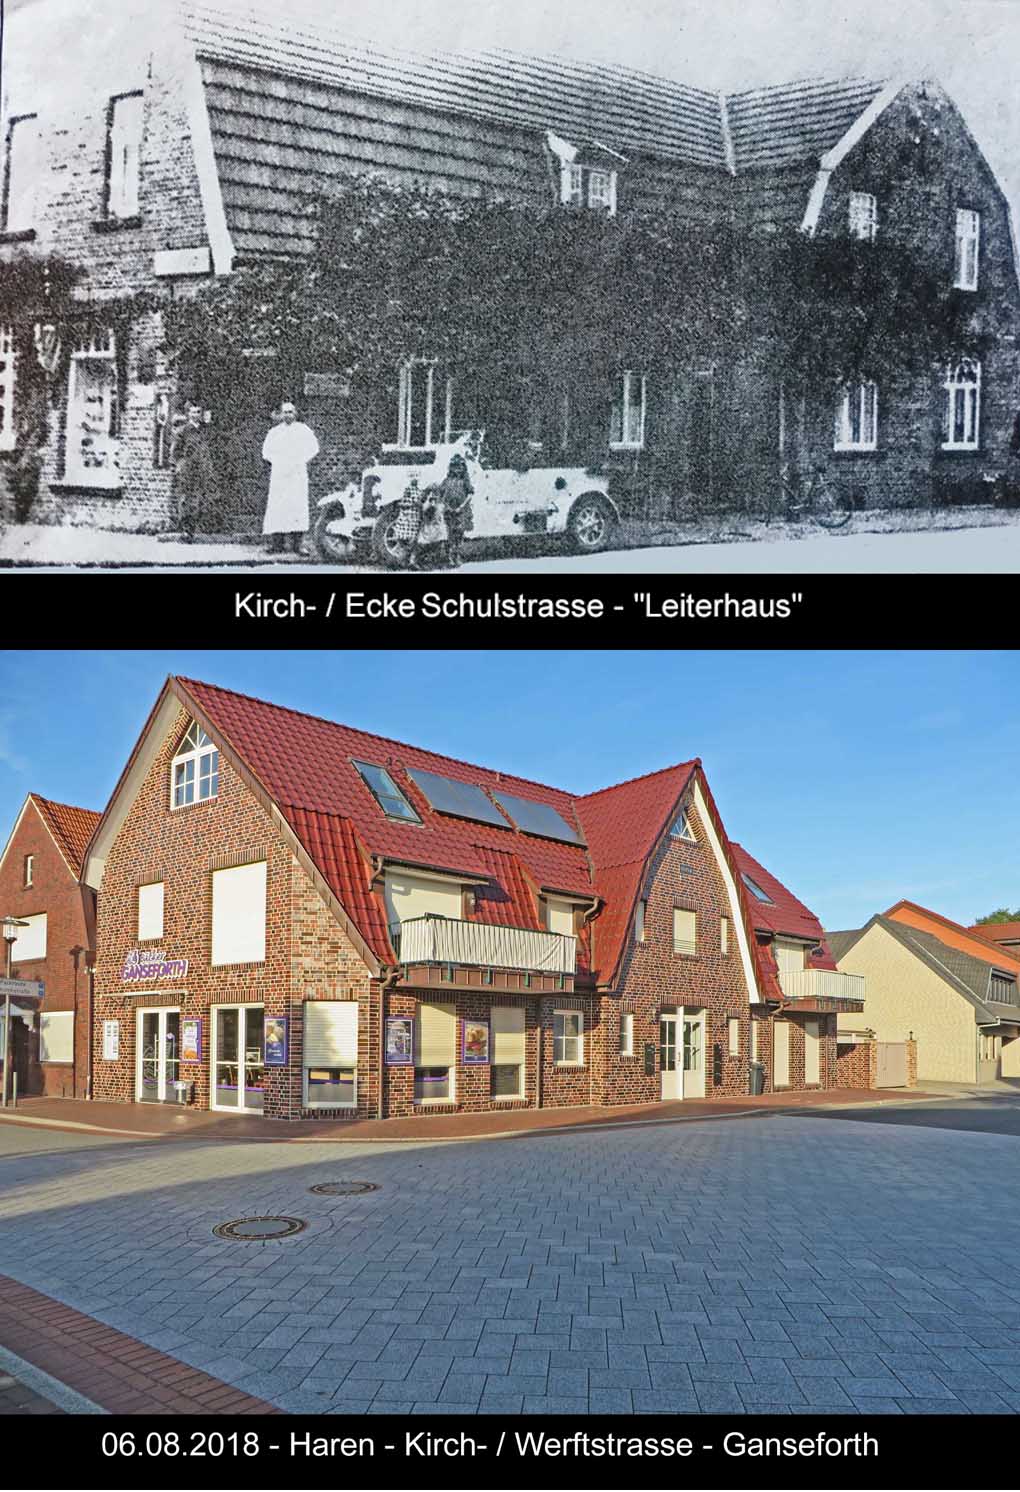 Werftstrasse coll Kirchstrasse N17 19602018 Leiterhaus 2